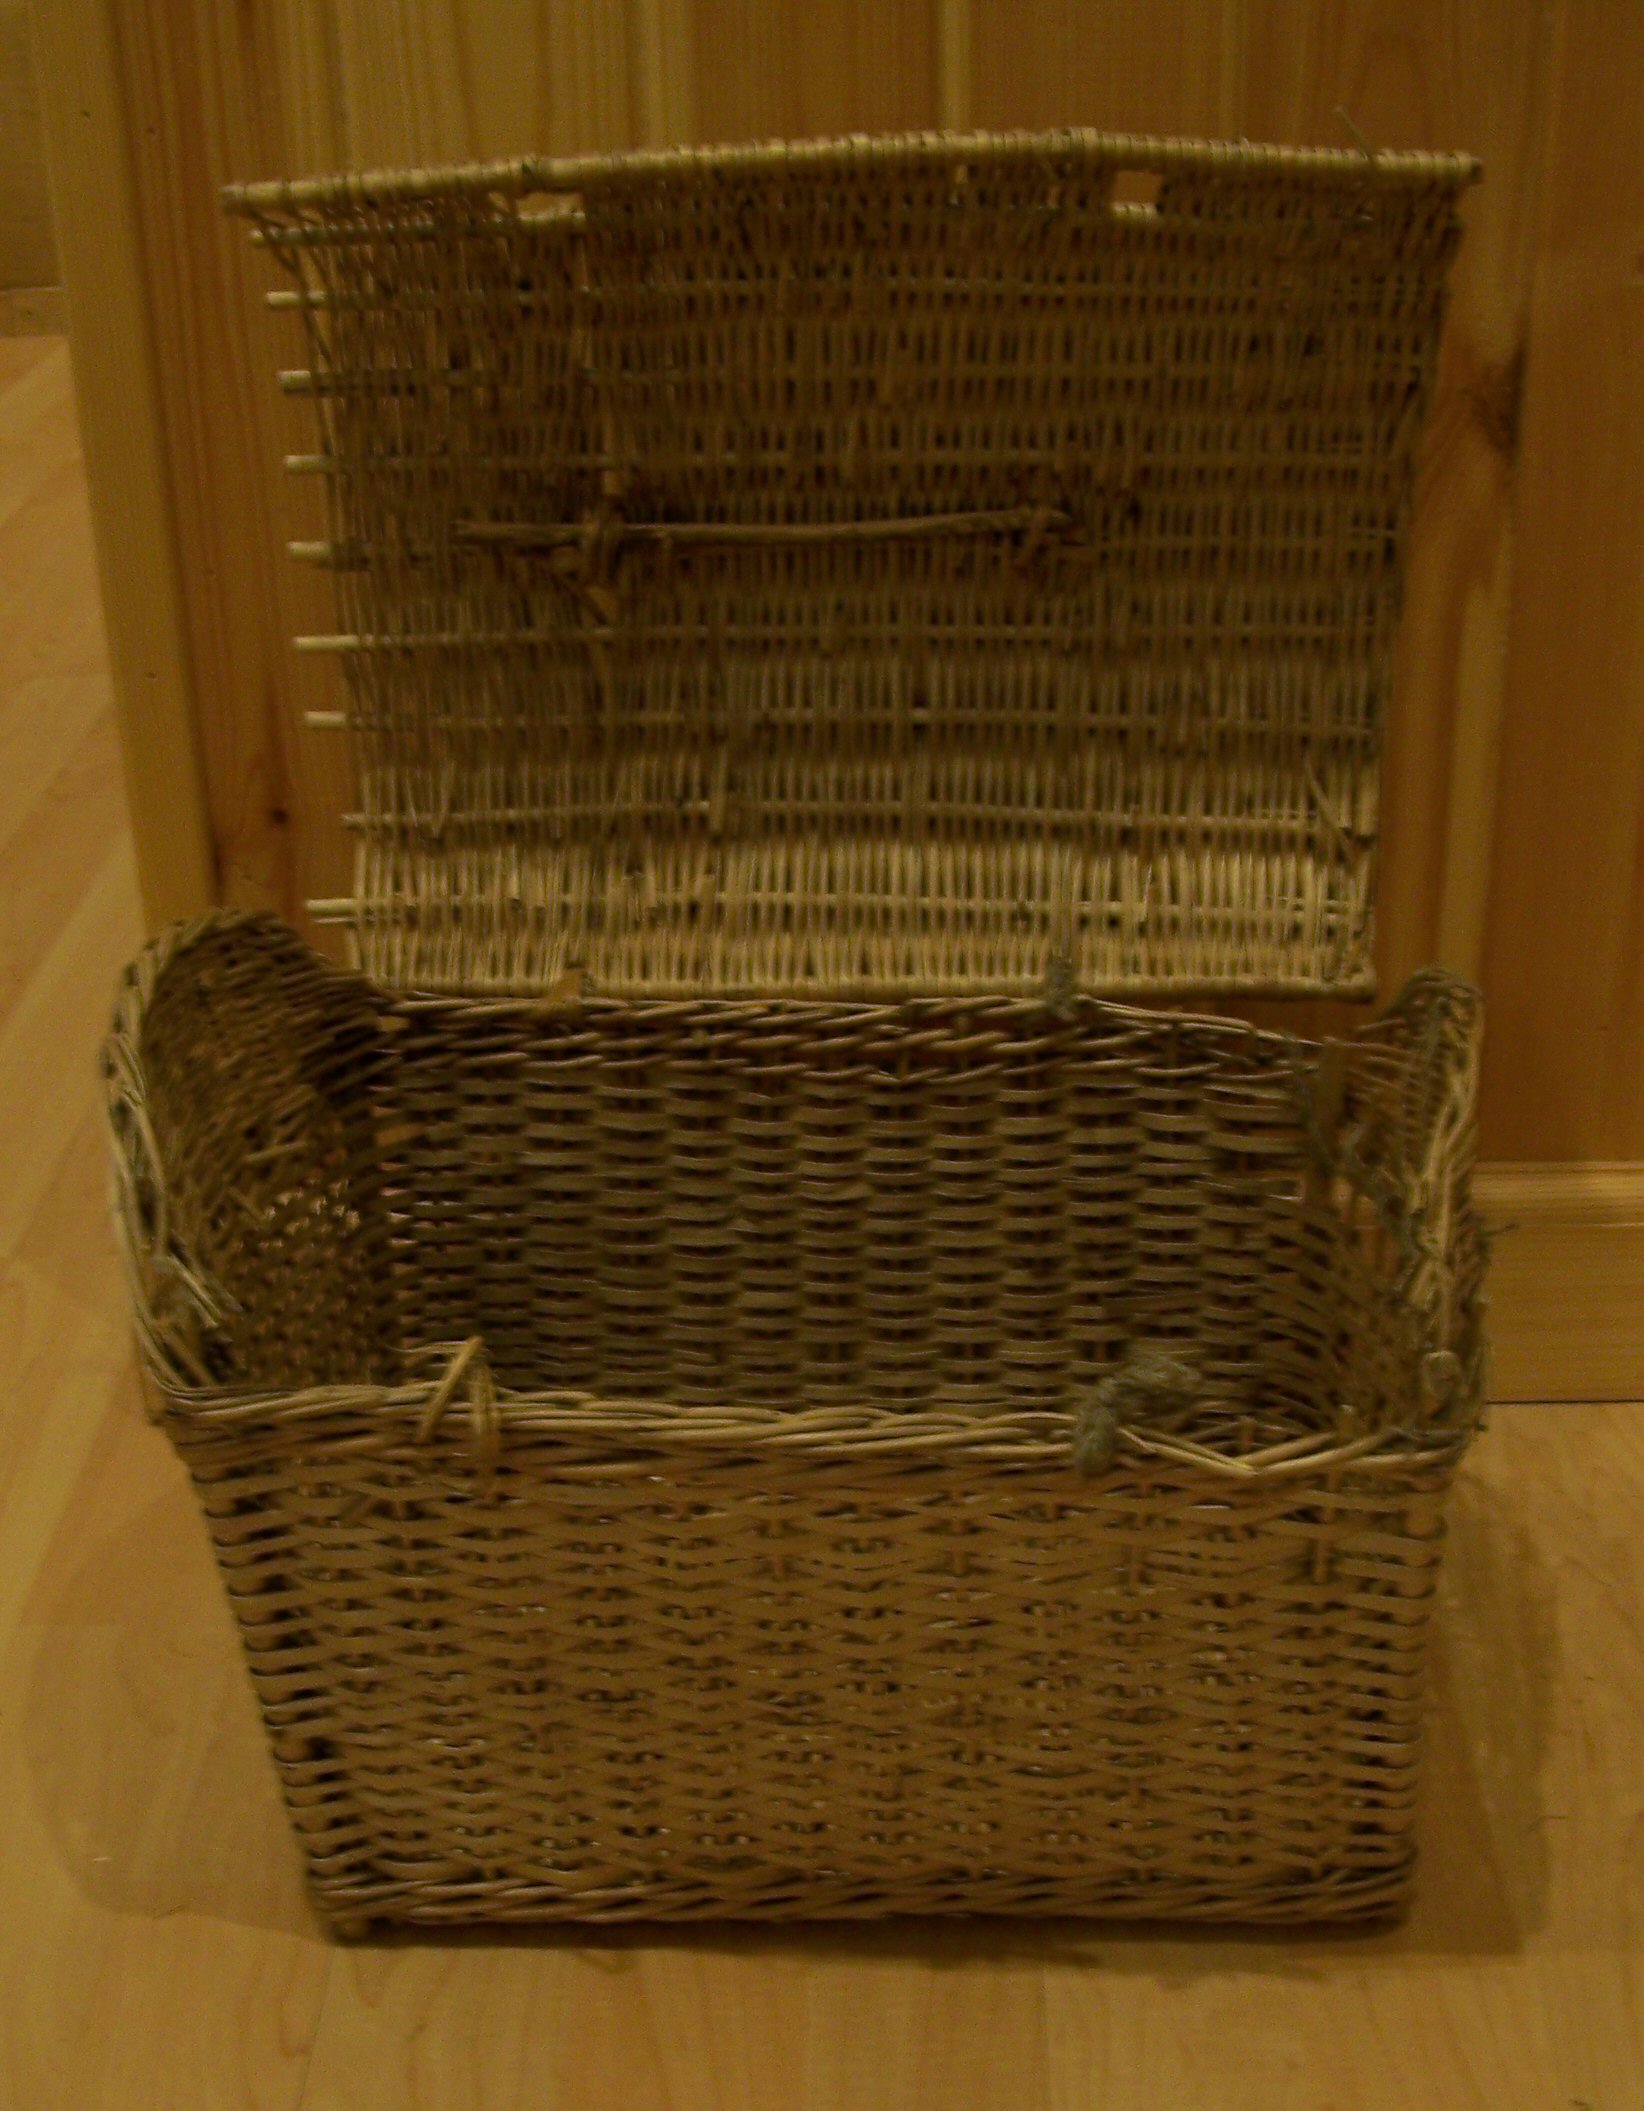 Bonnet basket. Uig Historical Society Museum